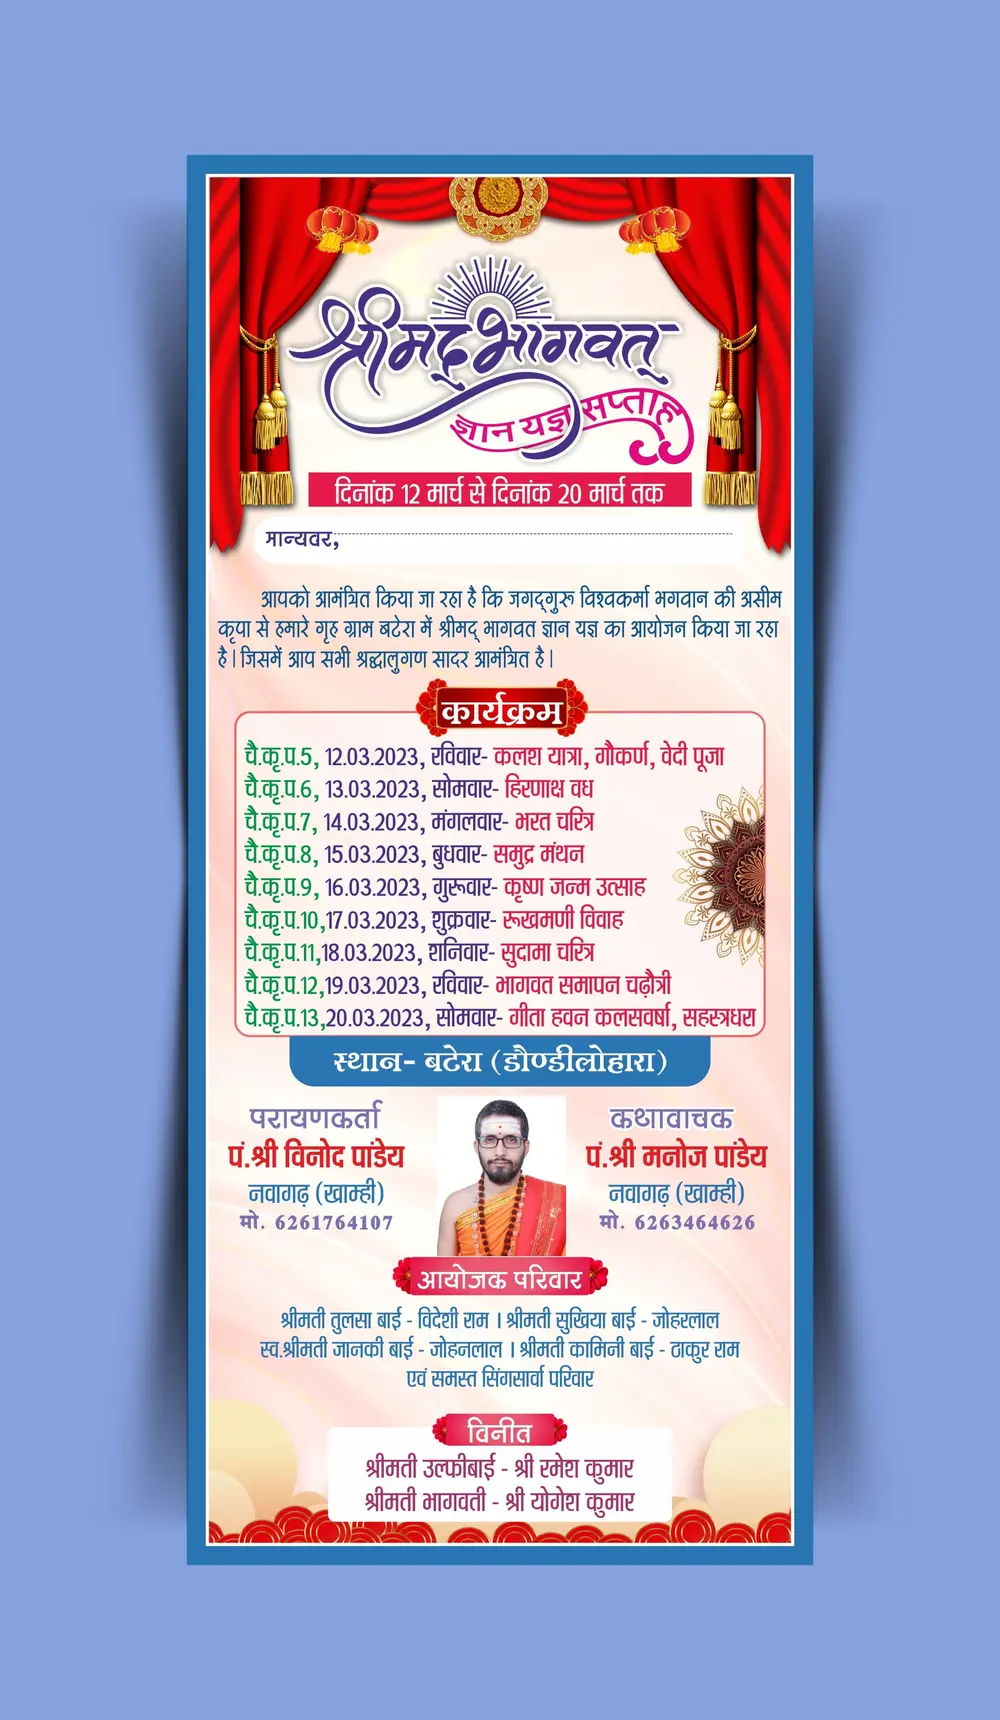 Shree mad bhagwat katha gyan yagya saptah invitation card in Hindi cdr and psd file download_070223